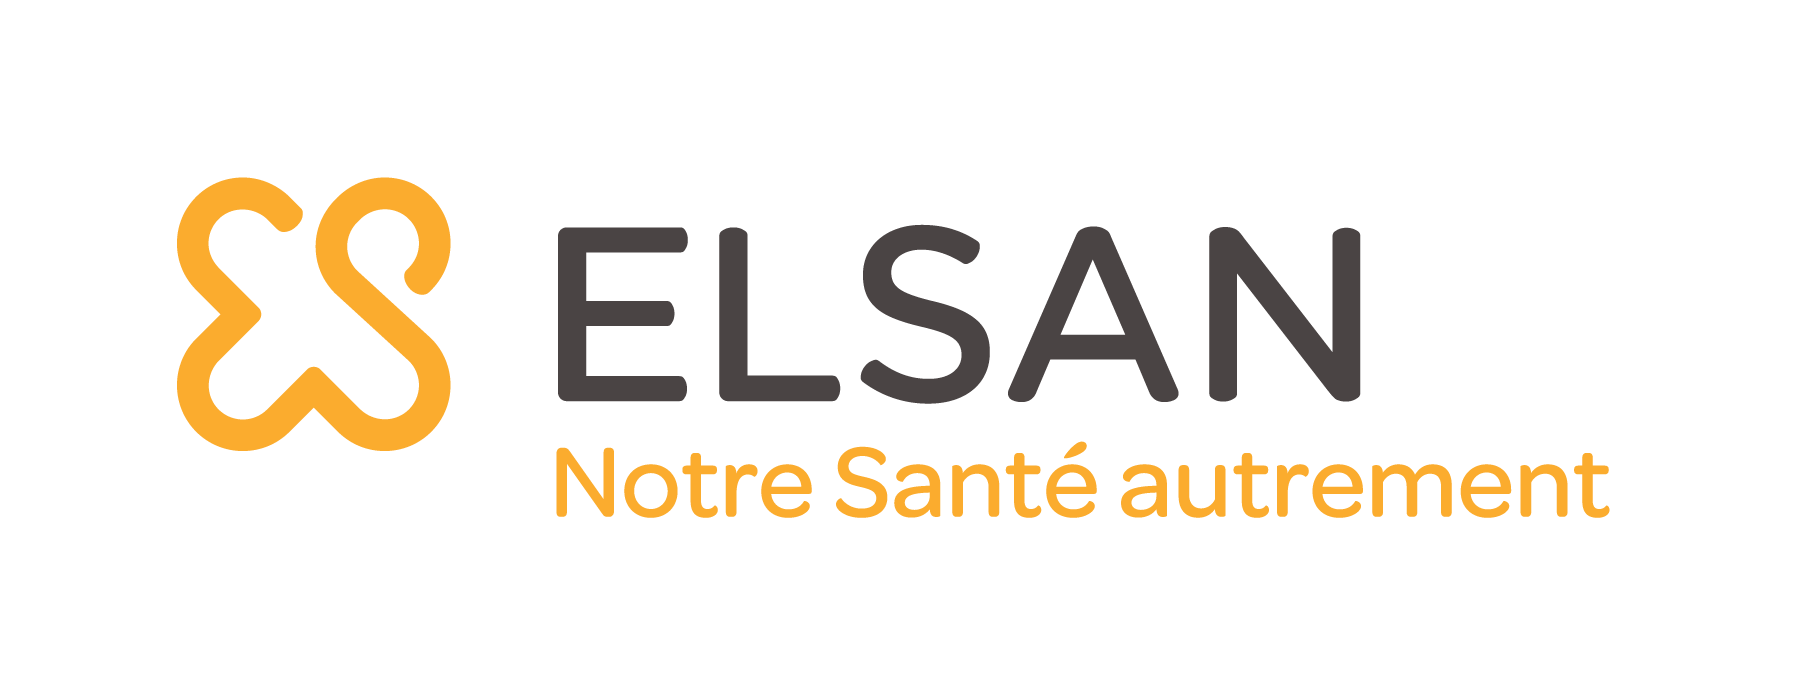 Logo exposant GIE ELSAN